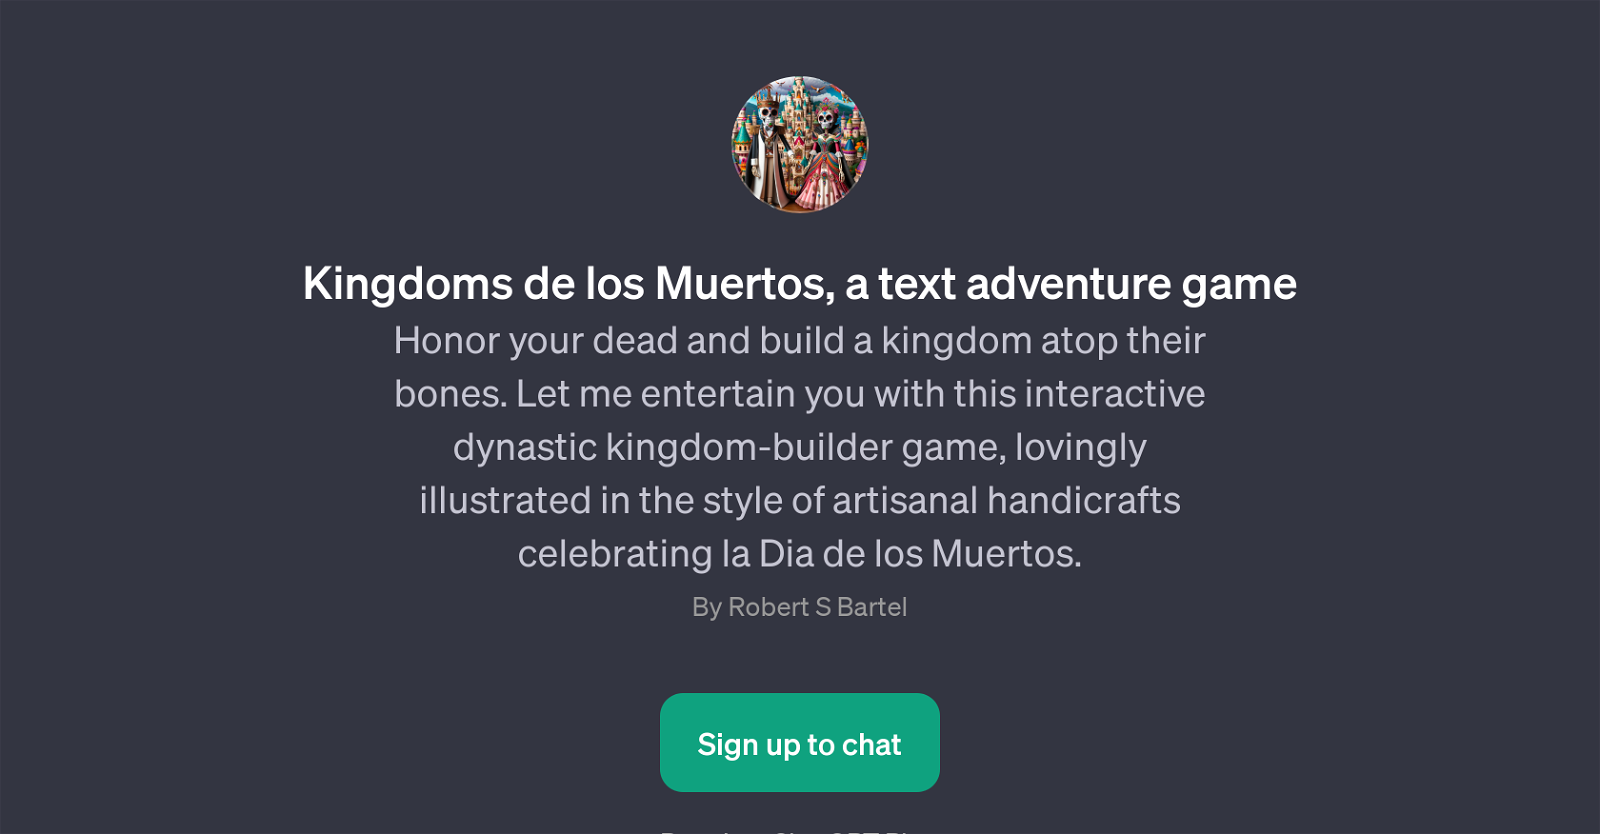 Kingdoms de los Muertos website